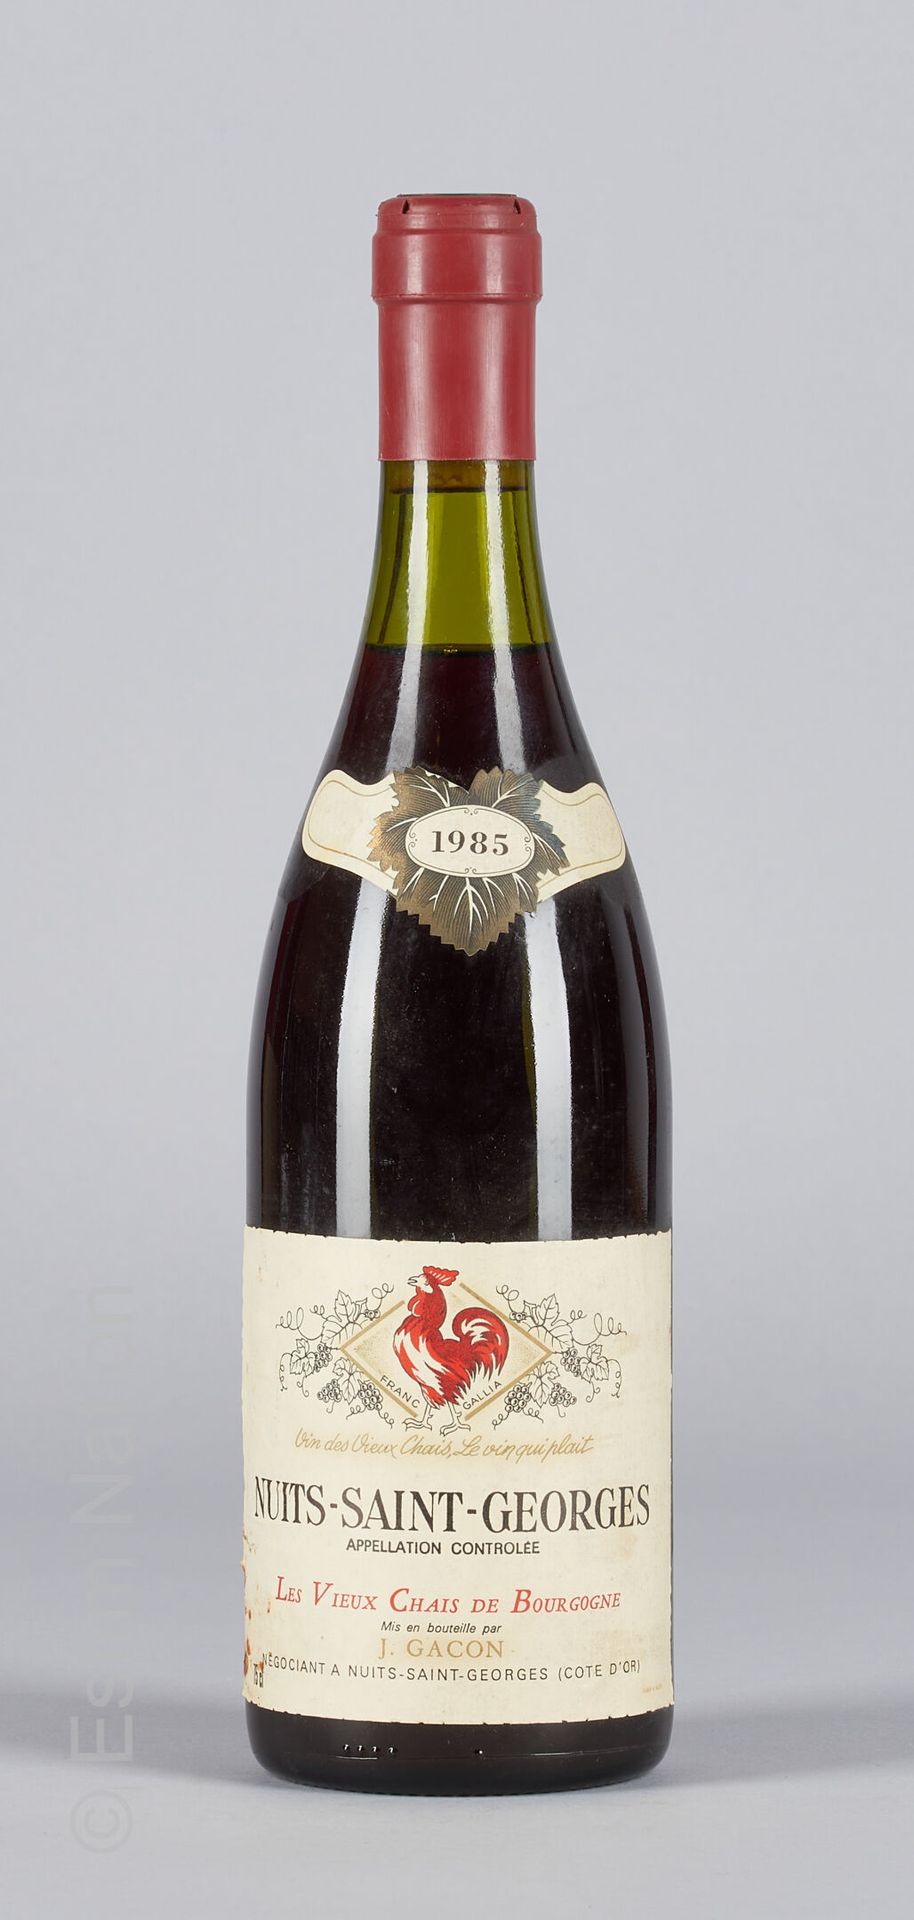 BOURGOGNE Nuits Saint-Georges 1985 Les vieux chais de Bourgogne J. Gacon 1瓶

(N.&hellip;